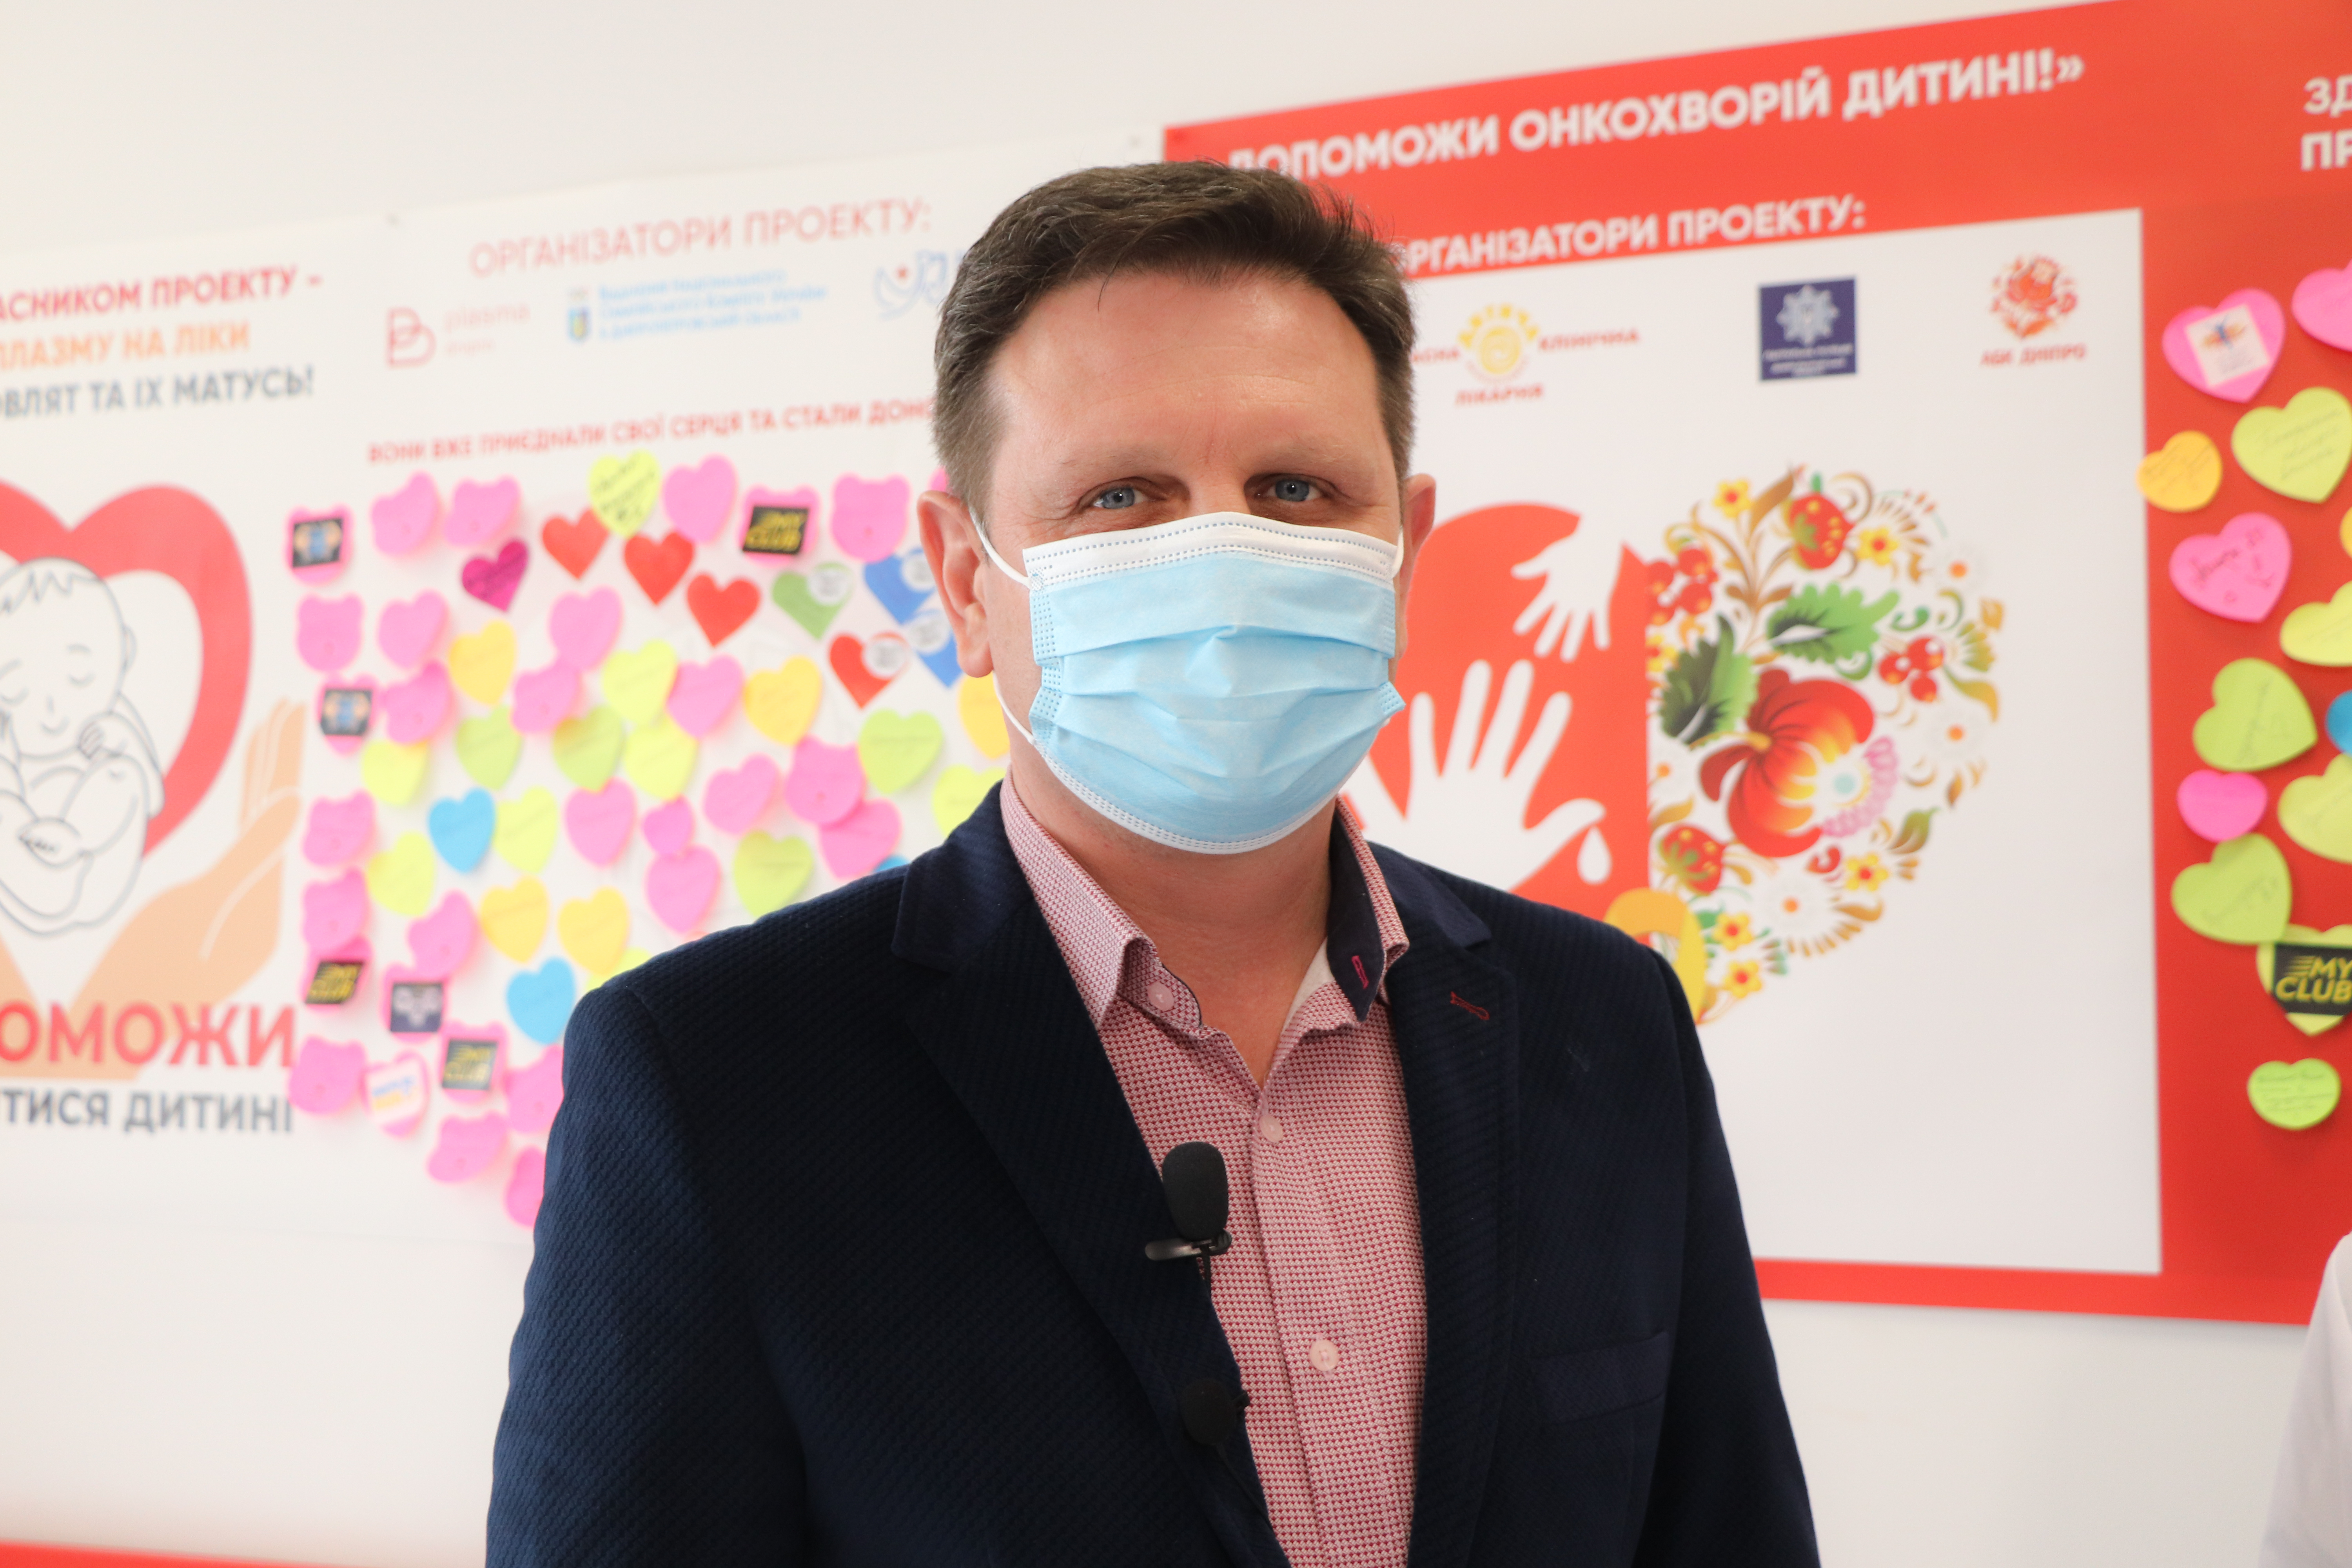 Дуже важливий і правильний проект: засновник компанії «ECO&PIZZA» про «ДОБРИЙ ПОНЕДІЛОК» у Biopharma Plasma Дніпро